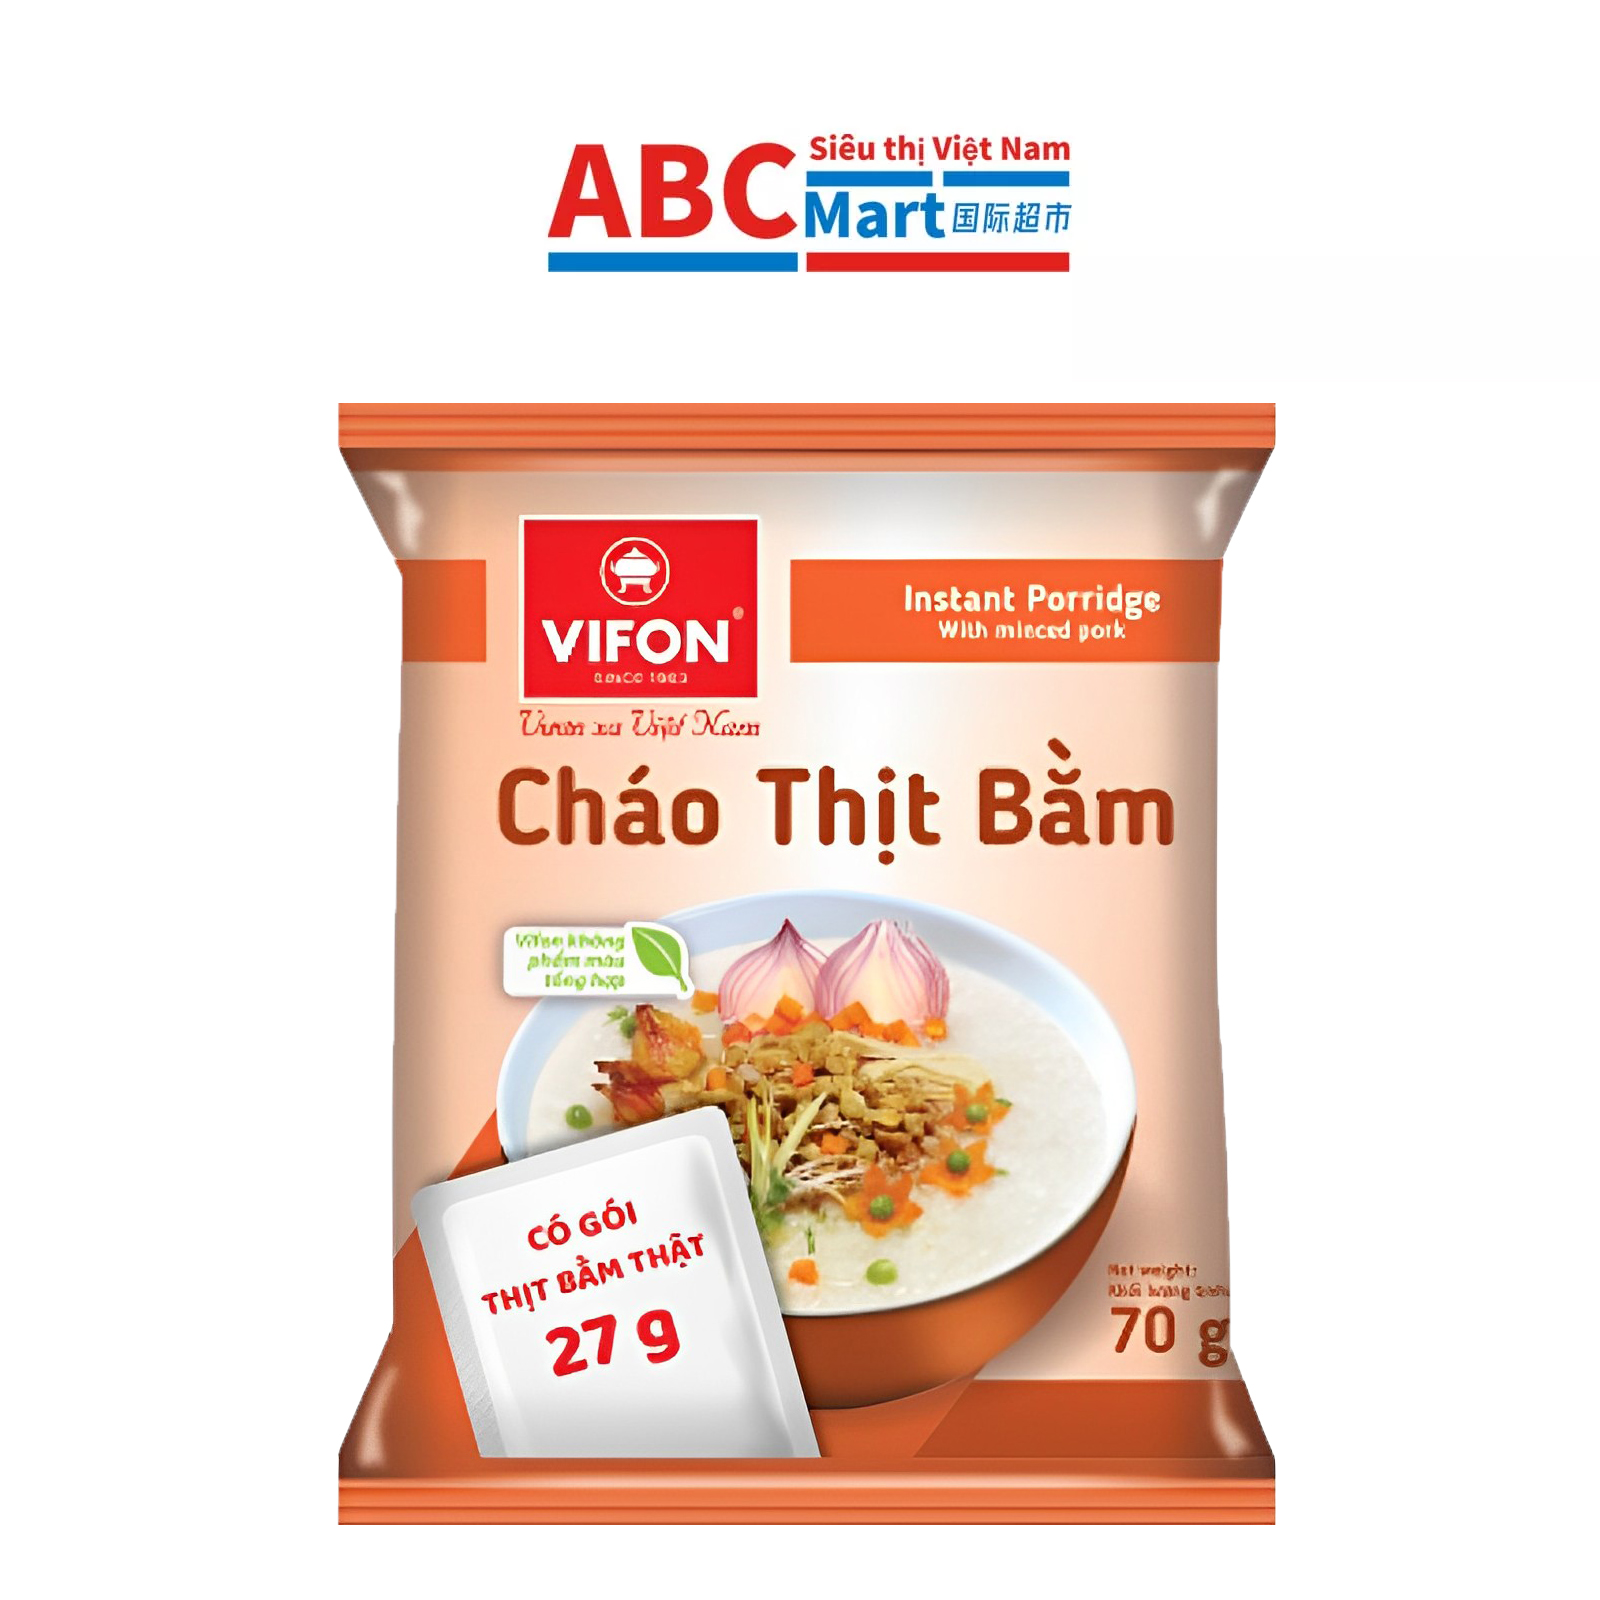 【Việt Nam-Cháo Thịt Bằm VIFON 70g】方便速食粥肉粥-ABCMart 国际超市